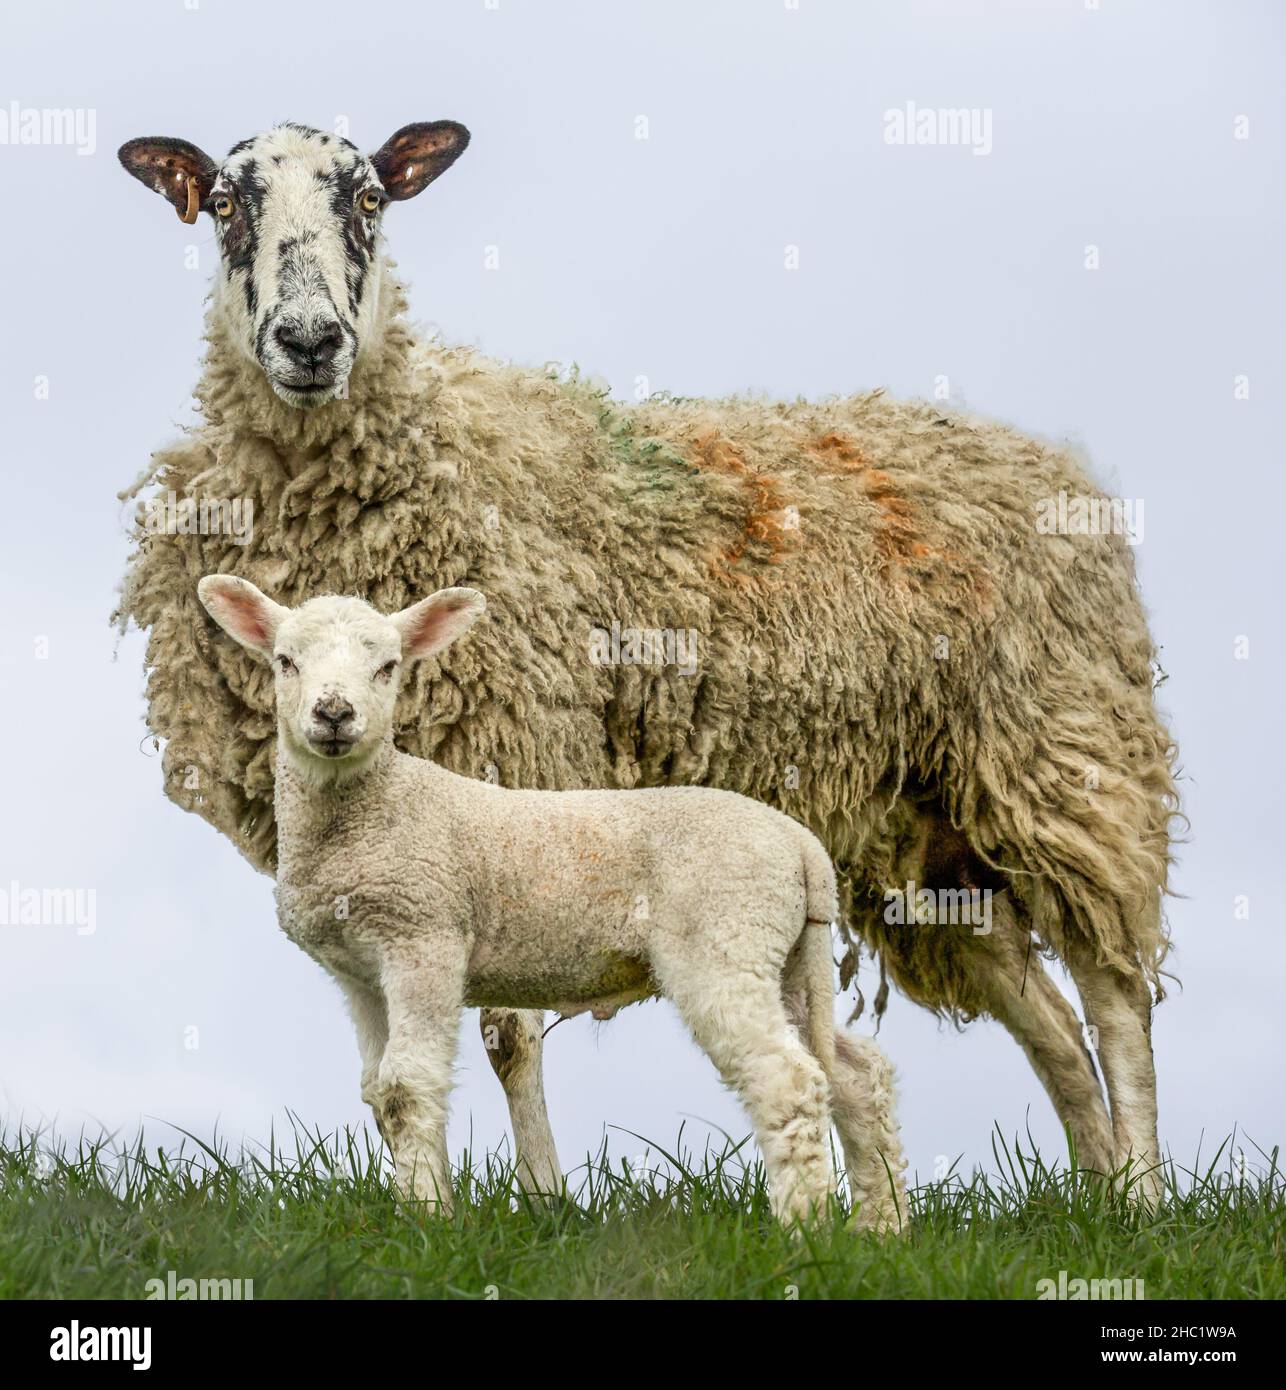 Retrato de una oveja o oveja de la mula de Swaledale con su cordero joven, mirando la cámara. Primer plano. Fondo limpio. CopySpace. Foto de stock